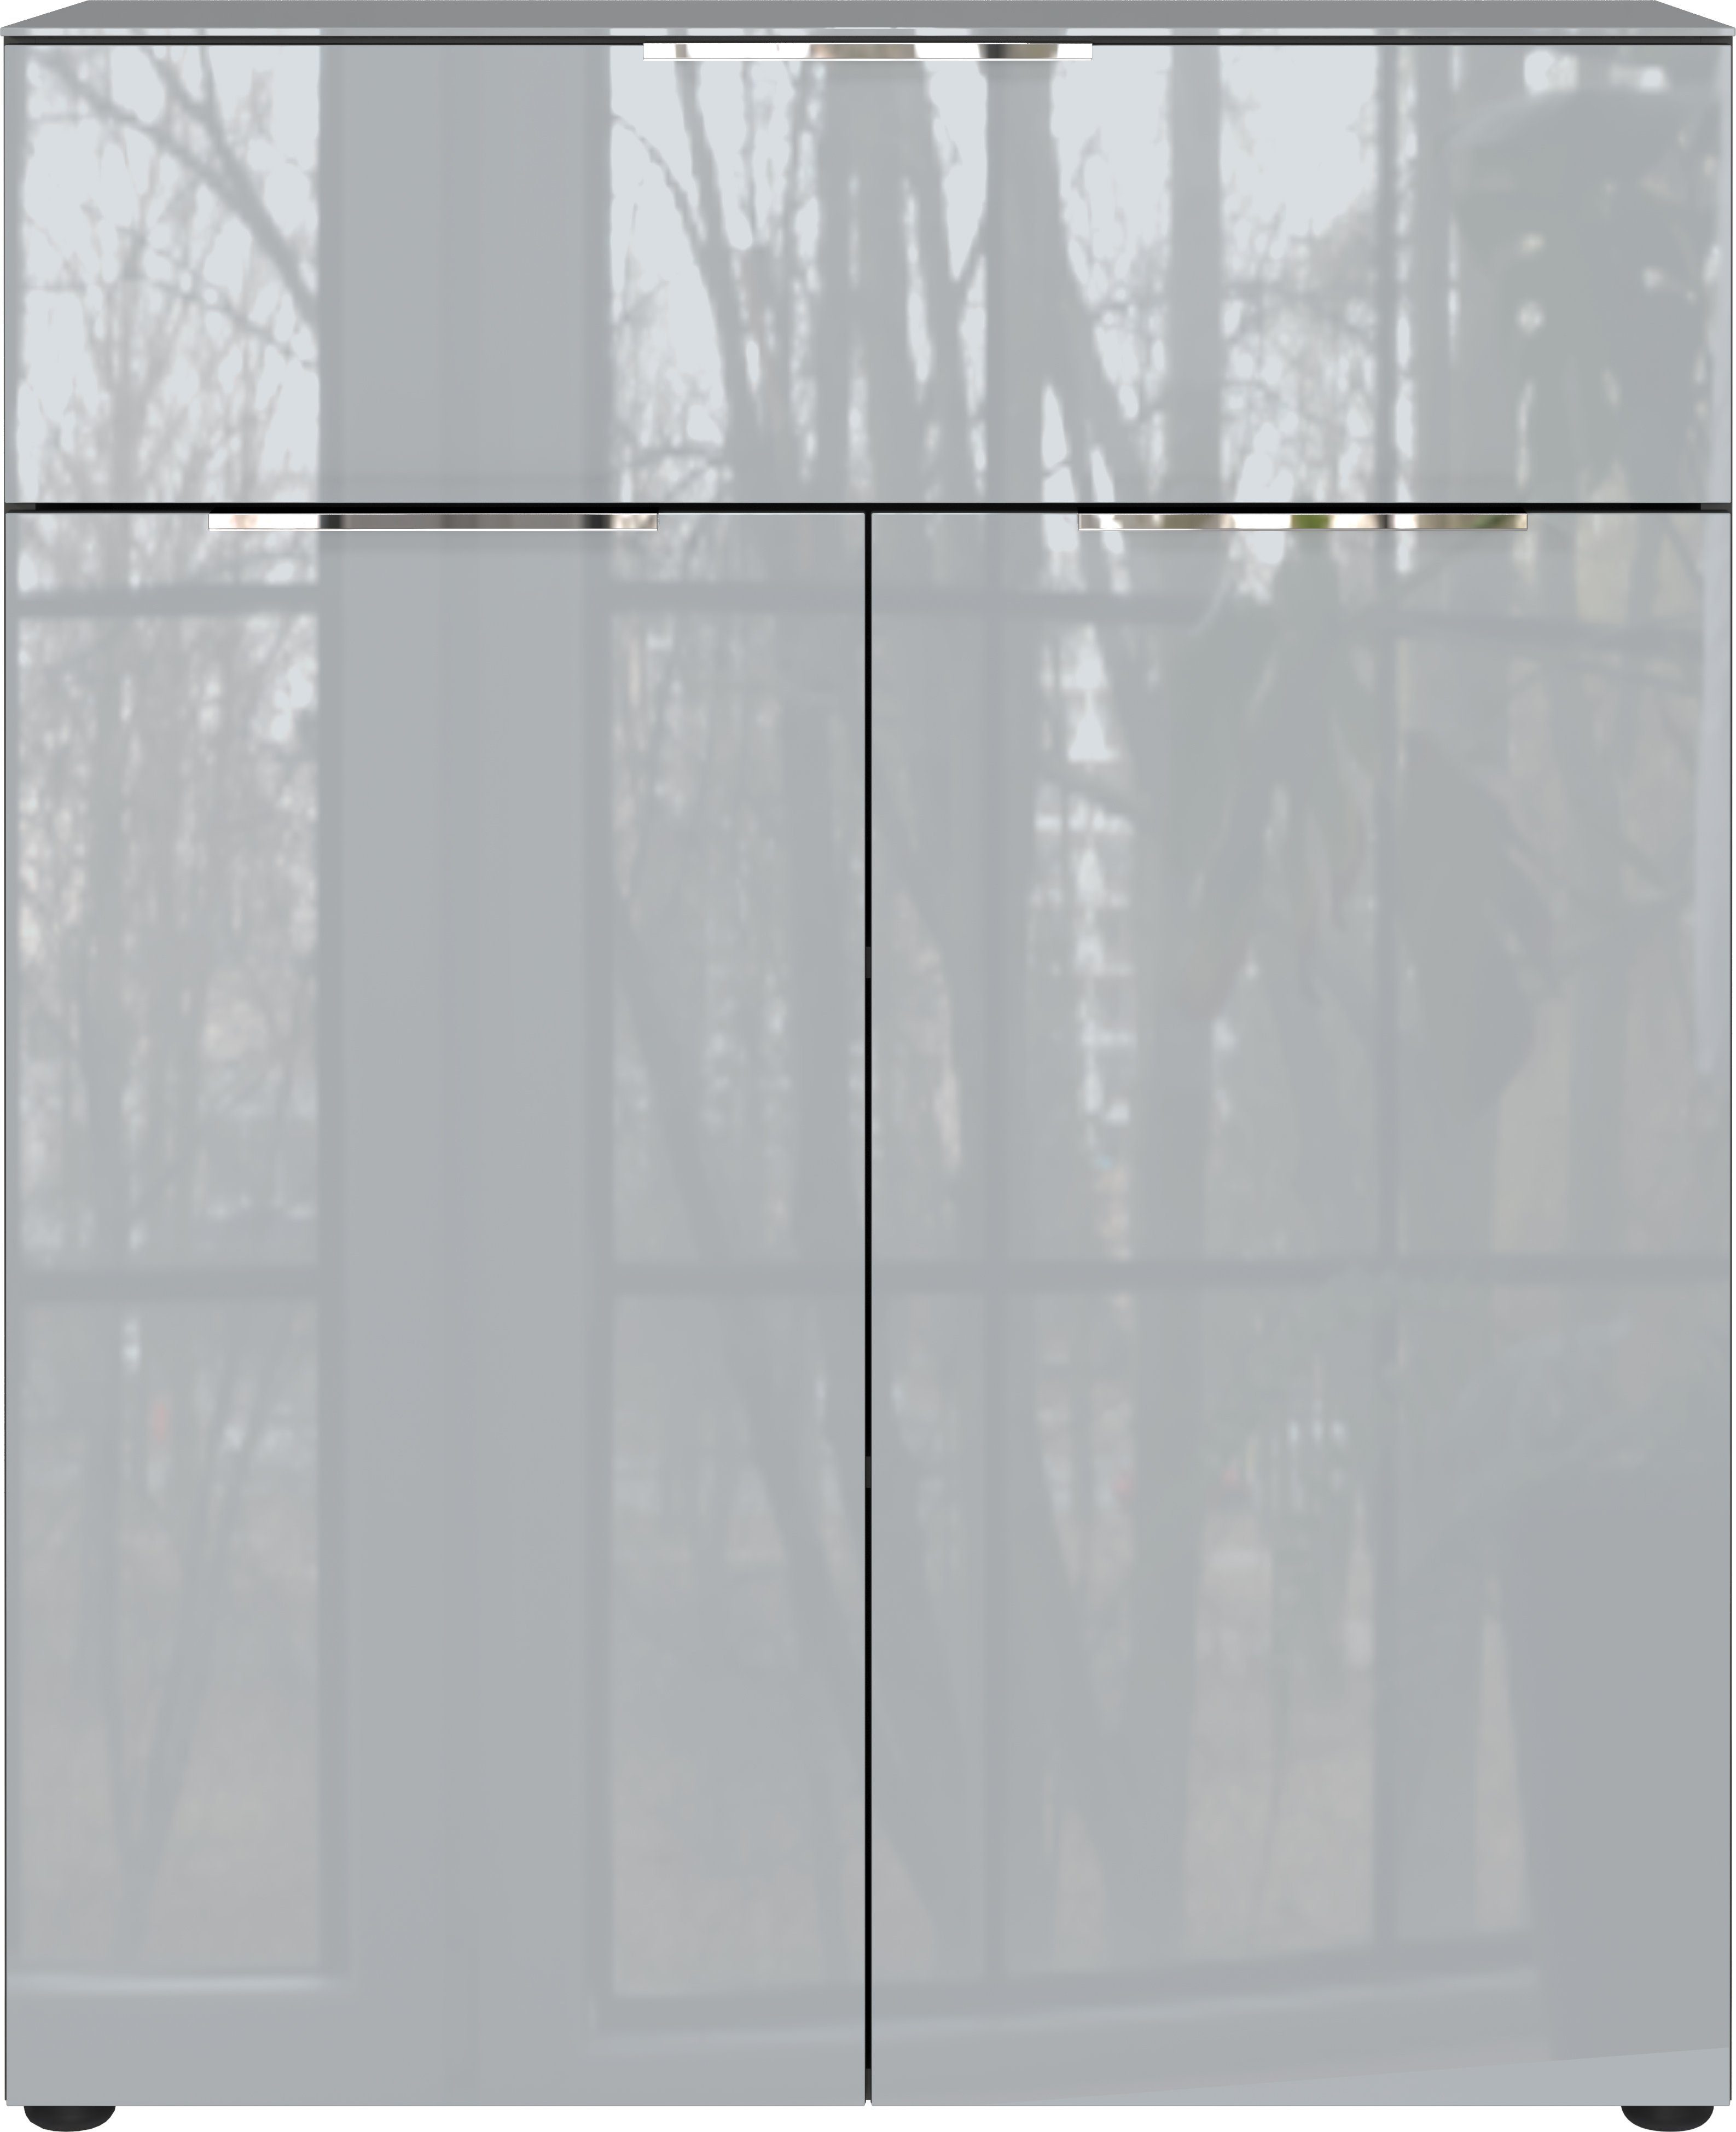 GERMANIA Kombikommode Oakland, Breite 83 cm, Fronten und Oberboden mit Glasauflage